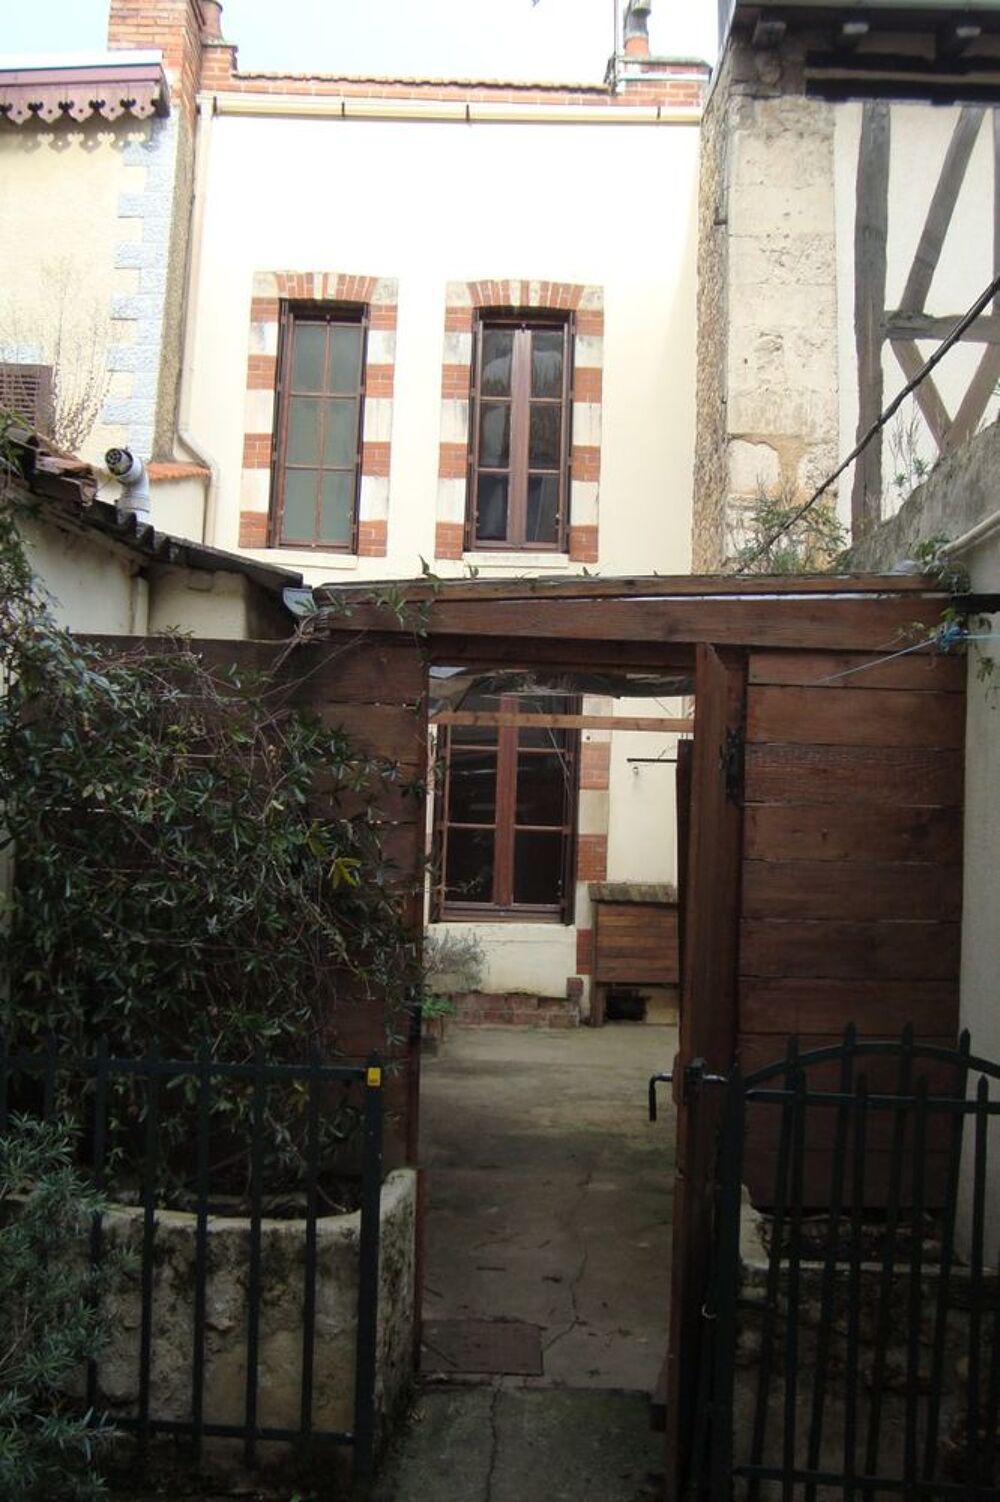 Location Maison Maisonnette calme proche centre-ville de Poitiers Poitiers